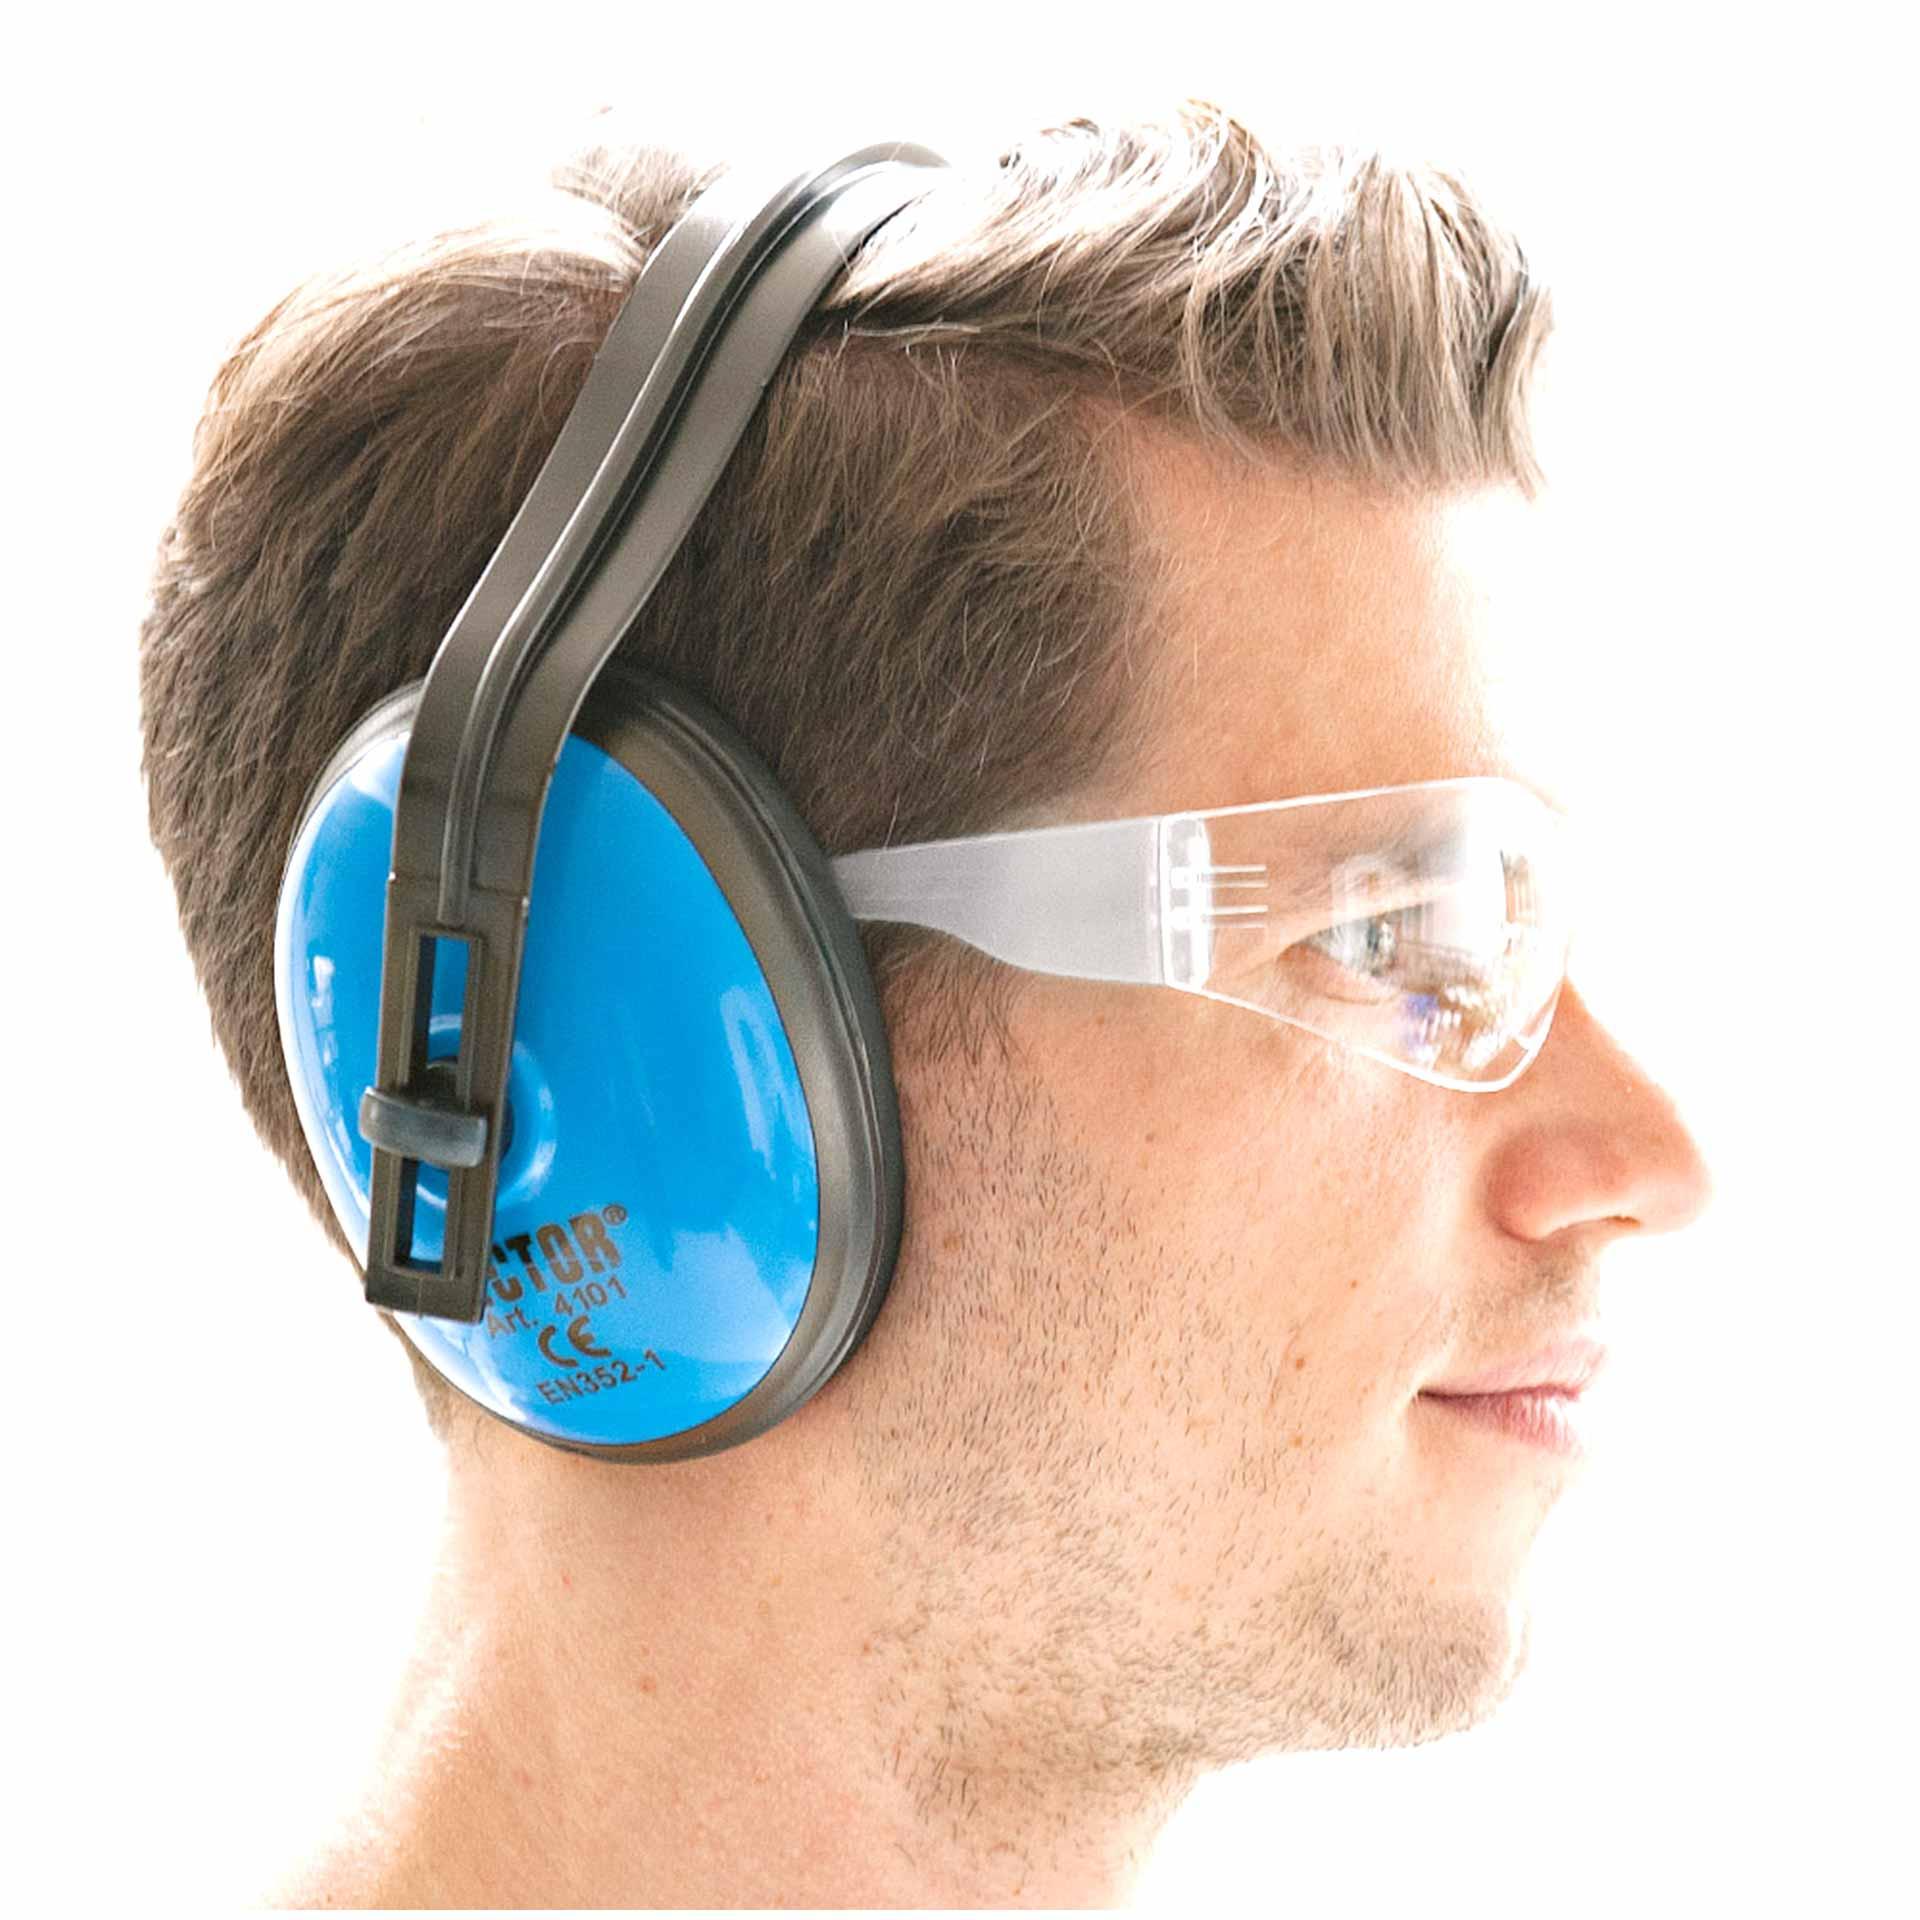 Kratzfeste Schutzbrille "Flat" für in kombination mit Kapselgehörschutz